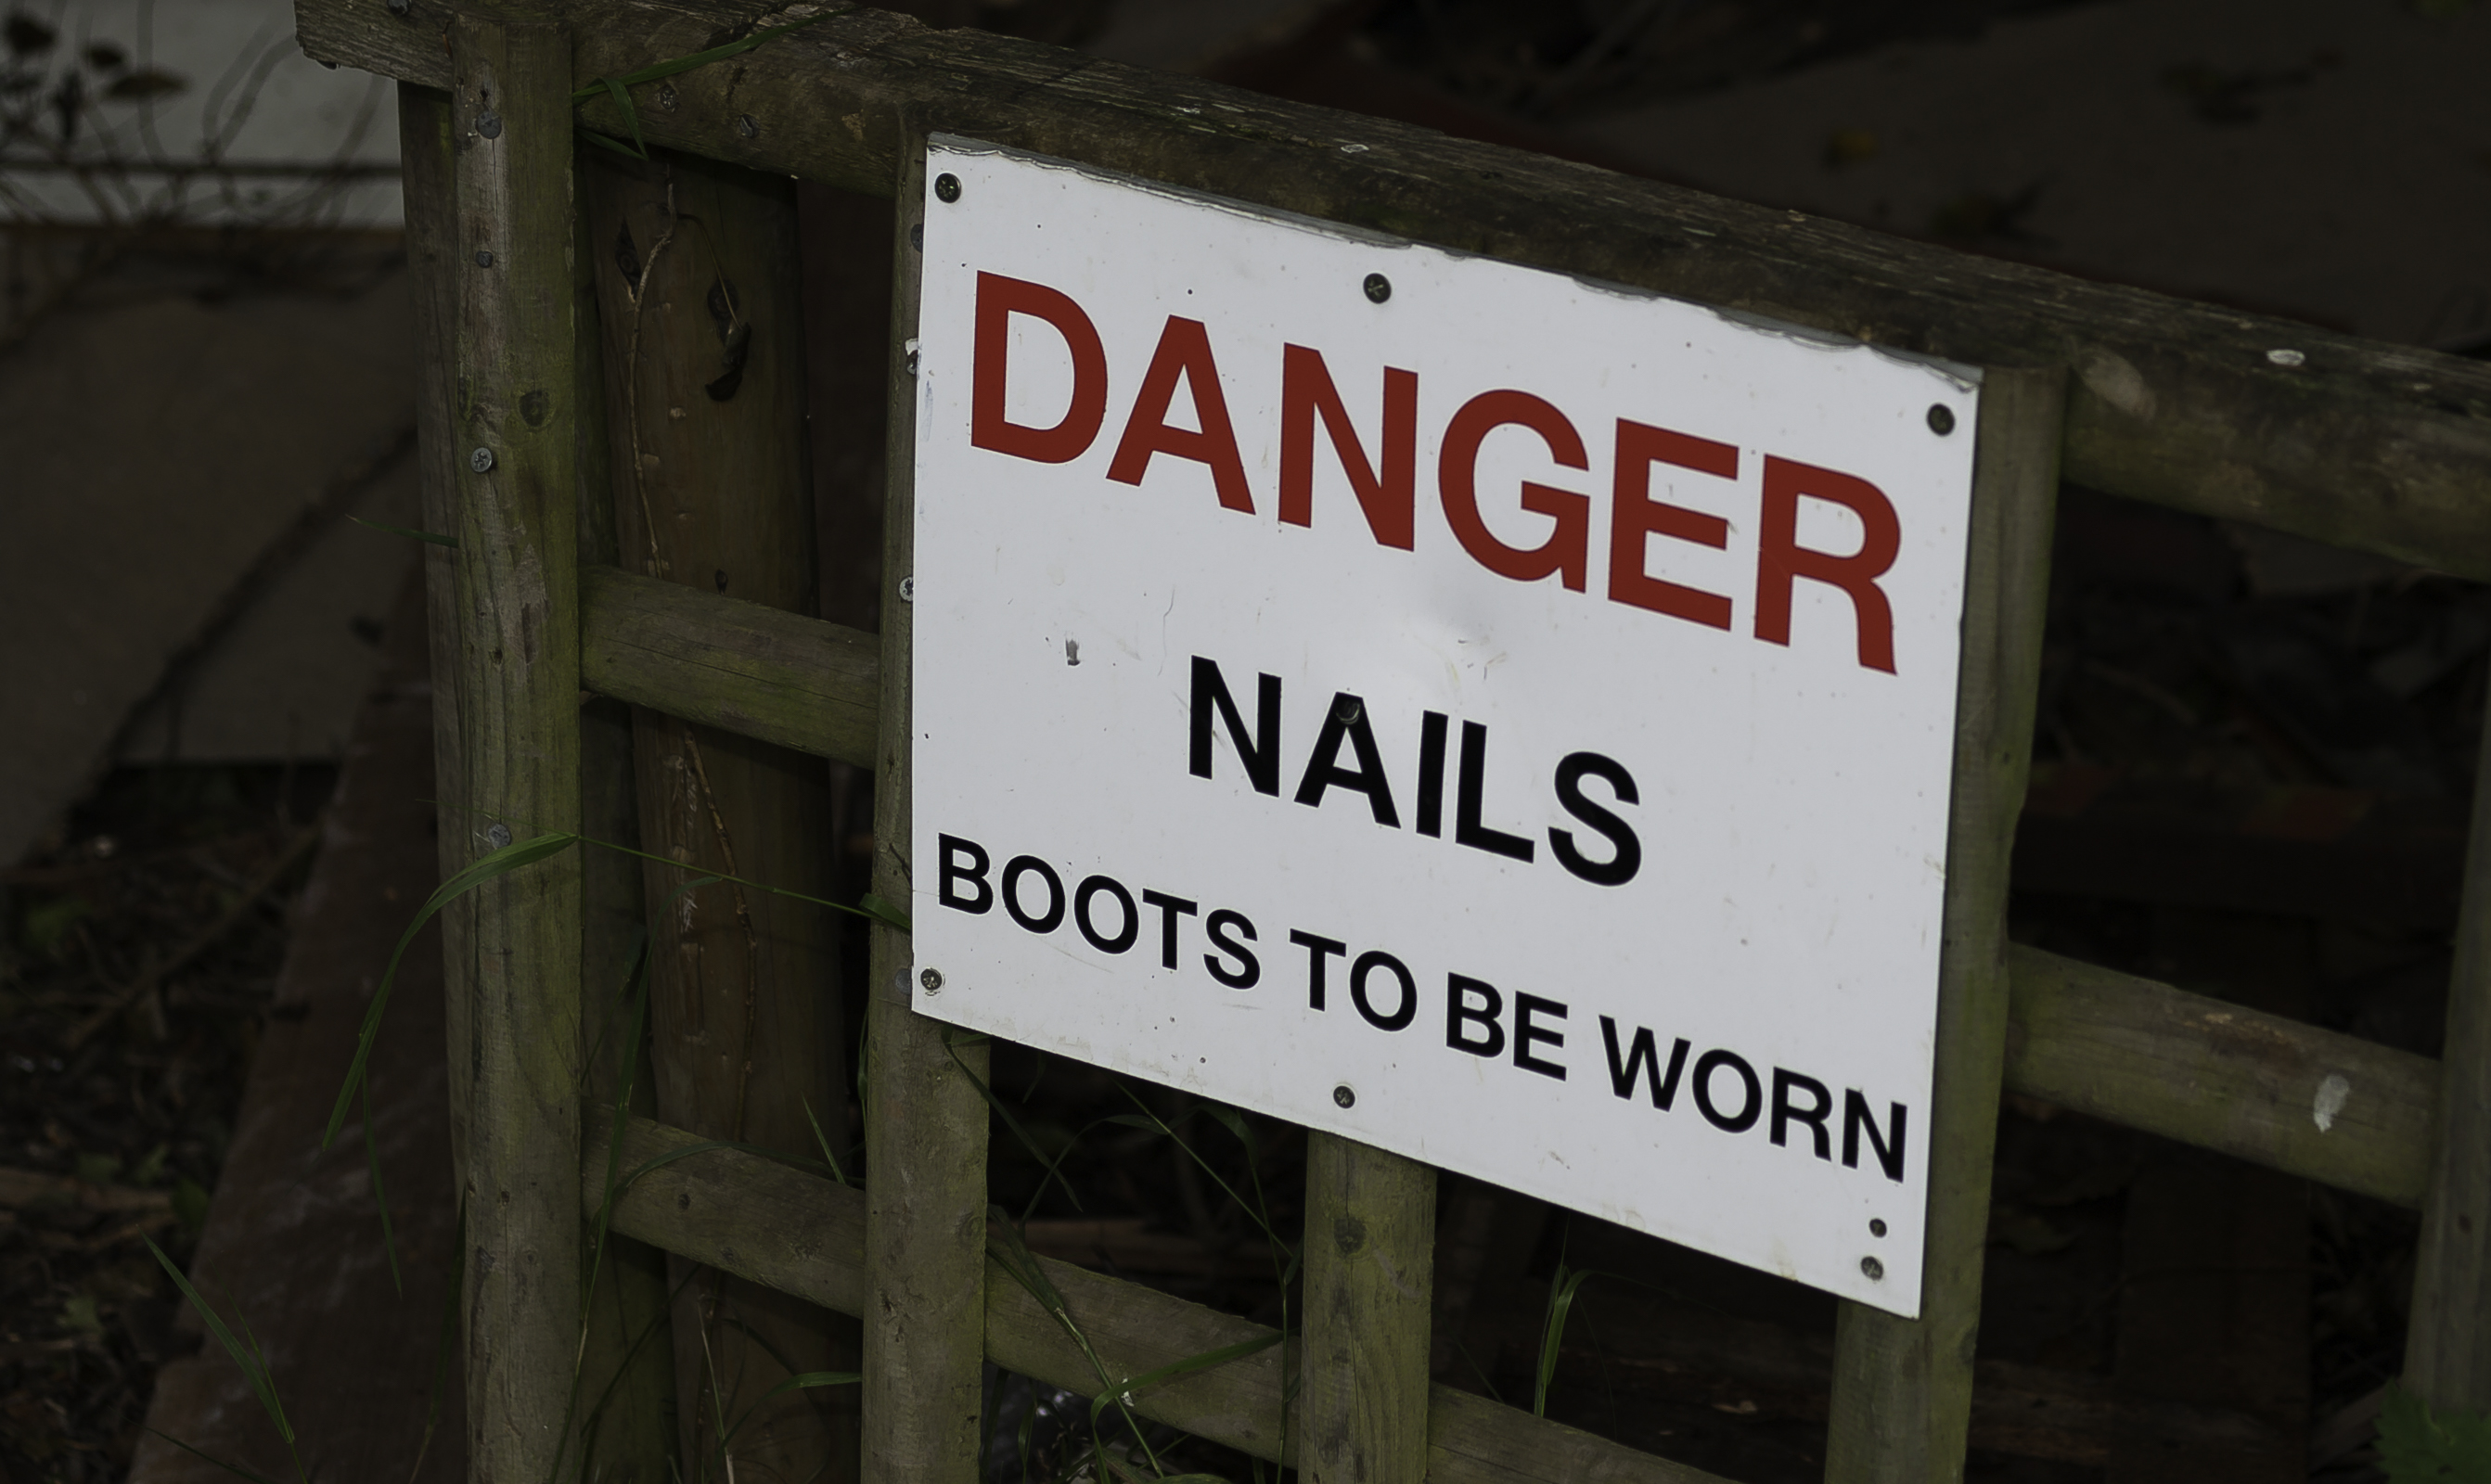 Danger - Nails